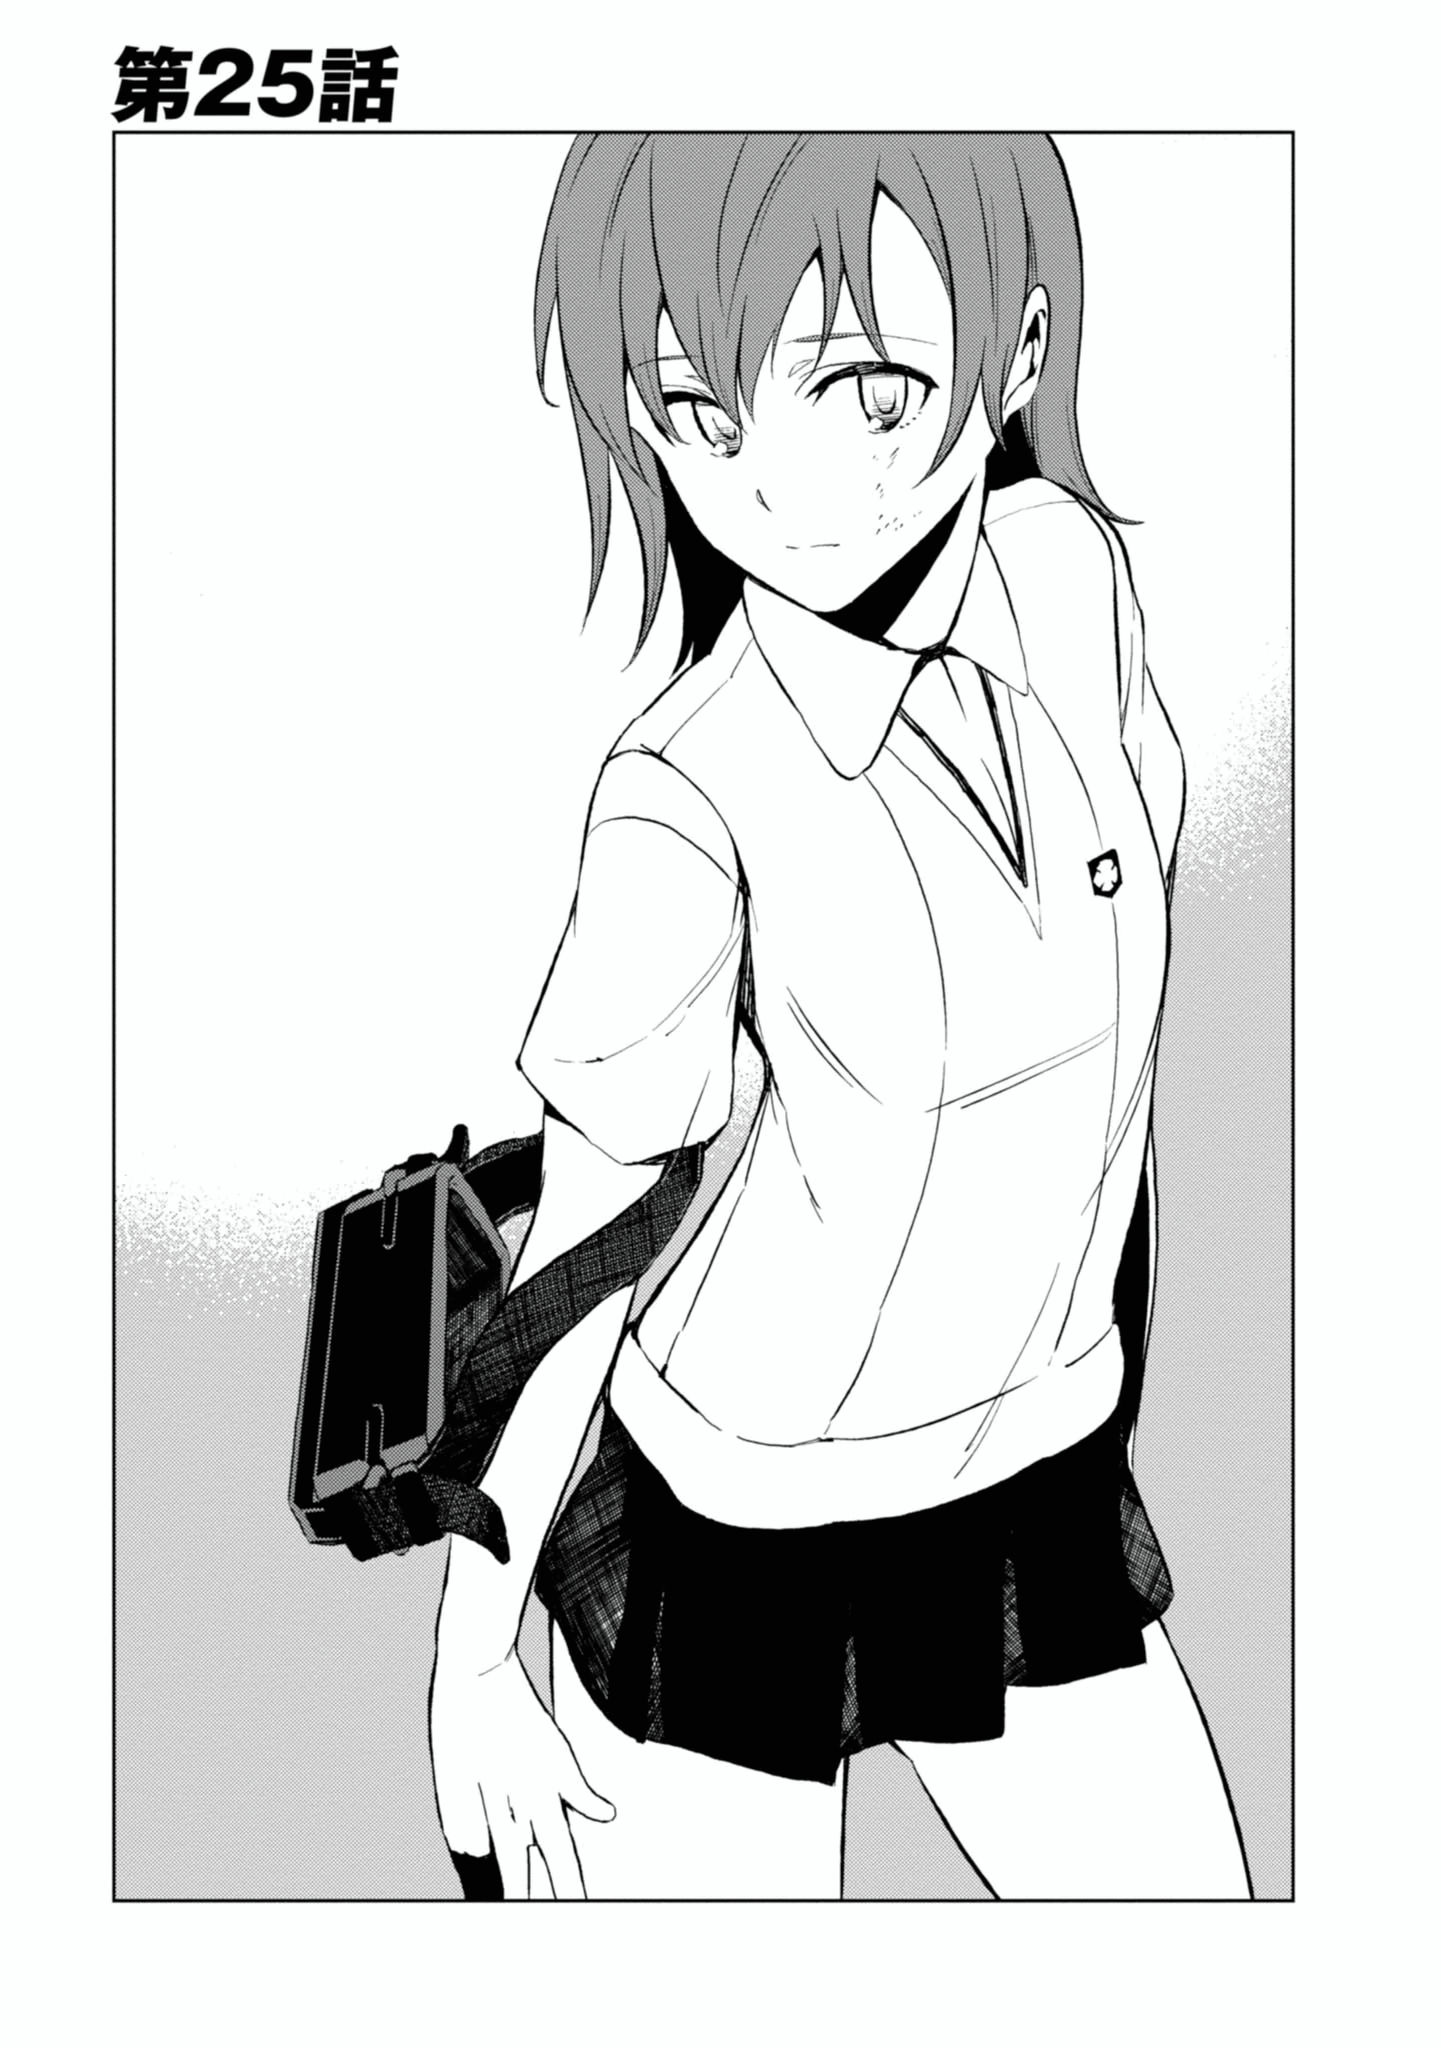 Toaru Kagaku no Accelerator Manga Chapter 025 | Toaru Majutsu no 